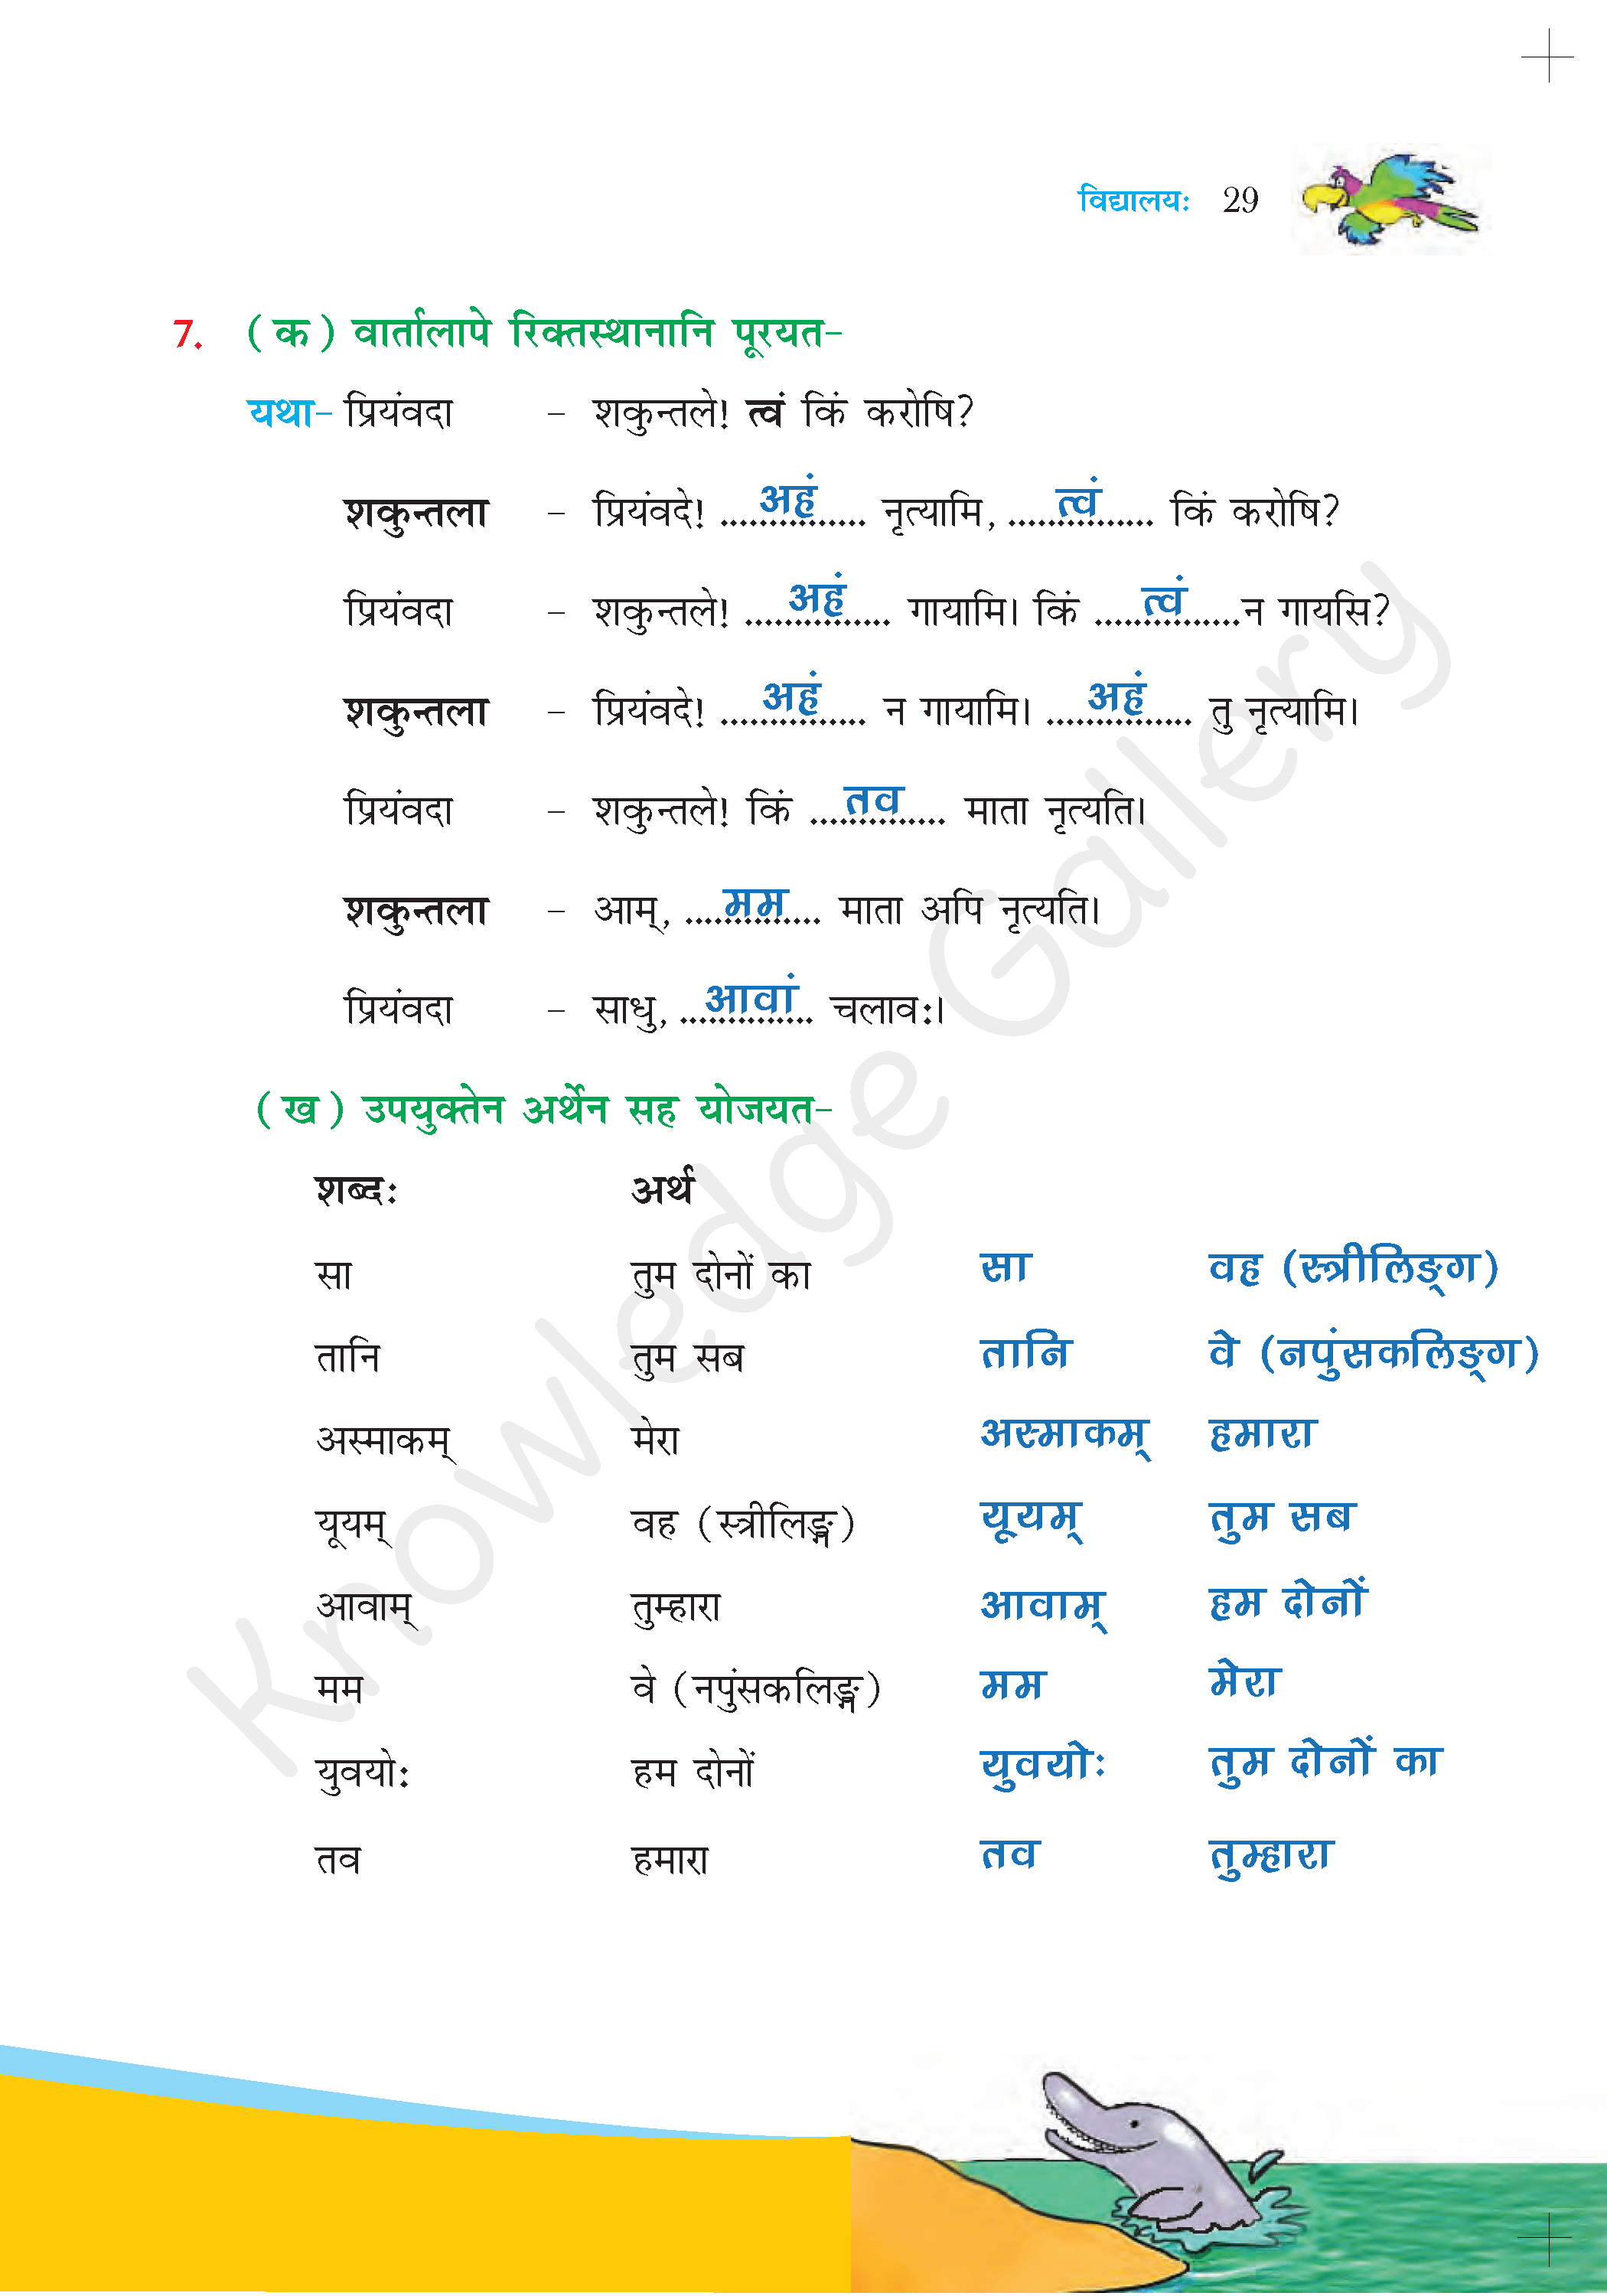 NCERT Solution For Class 6 Sanskrit Chapter 4 part 8